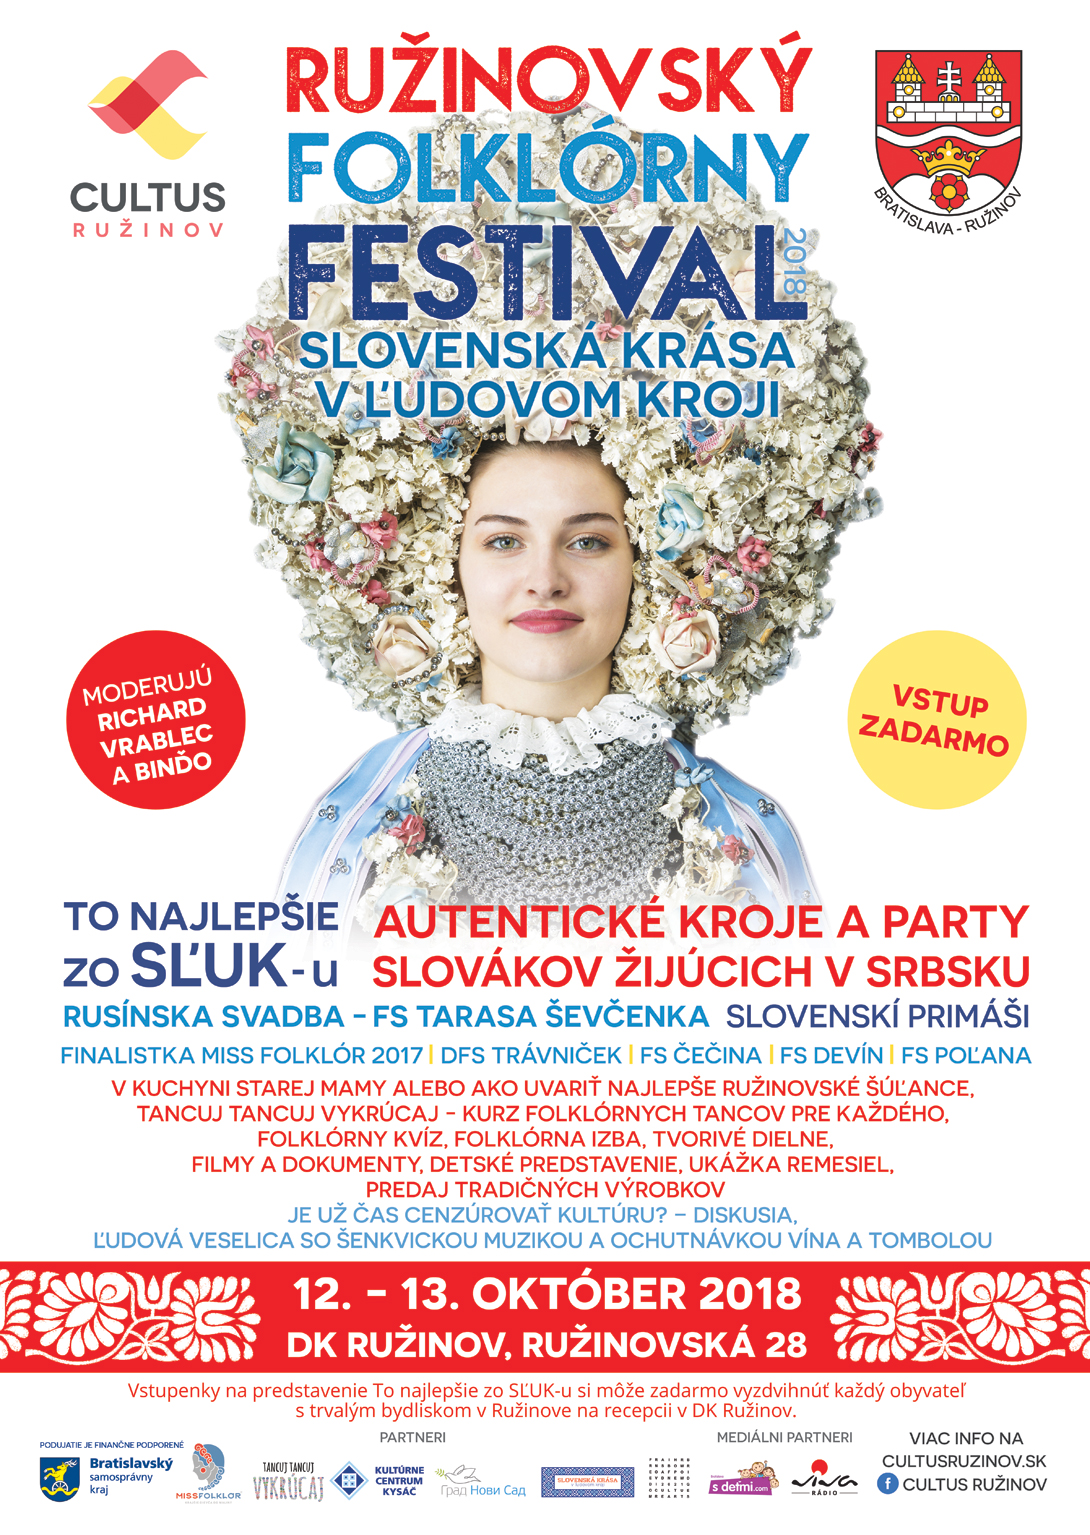 Ruinovsk folklrny festival 2018 a vstava 